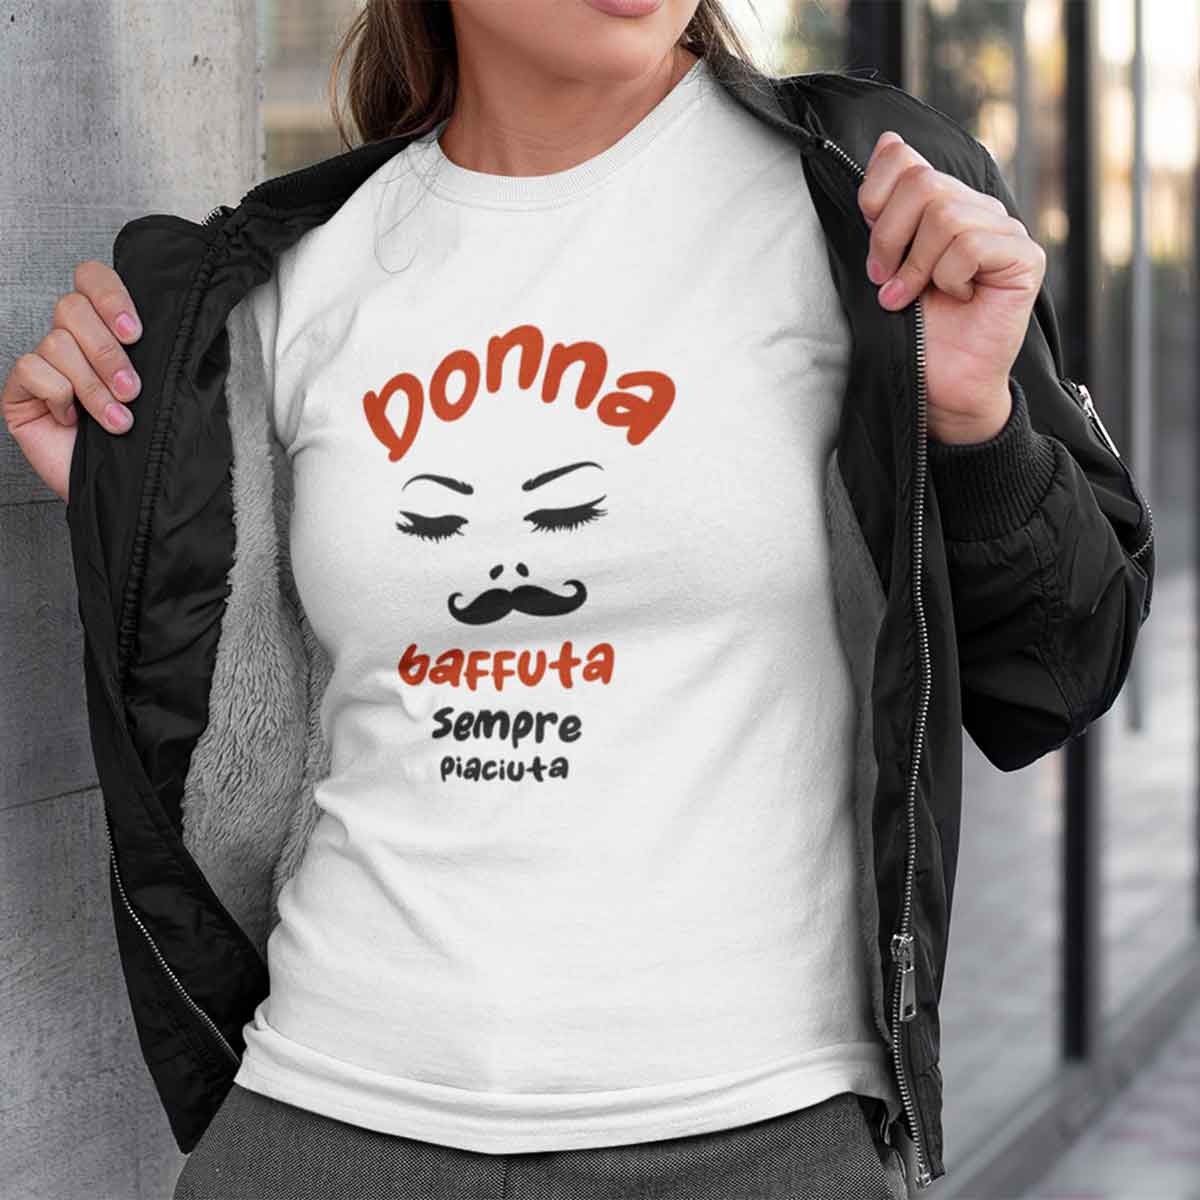 Donna baffuta sempre piaciuta - T-Shirt bianca Donna